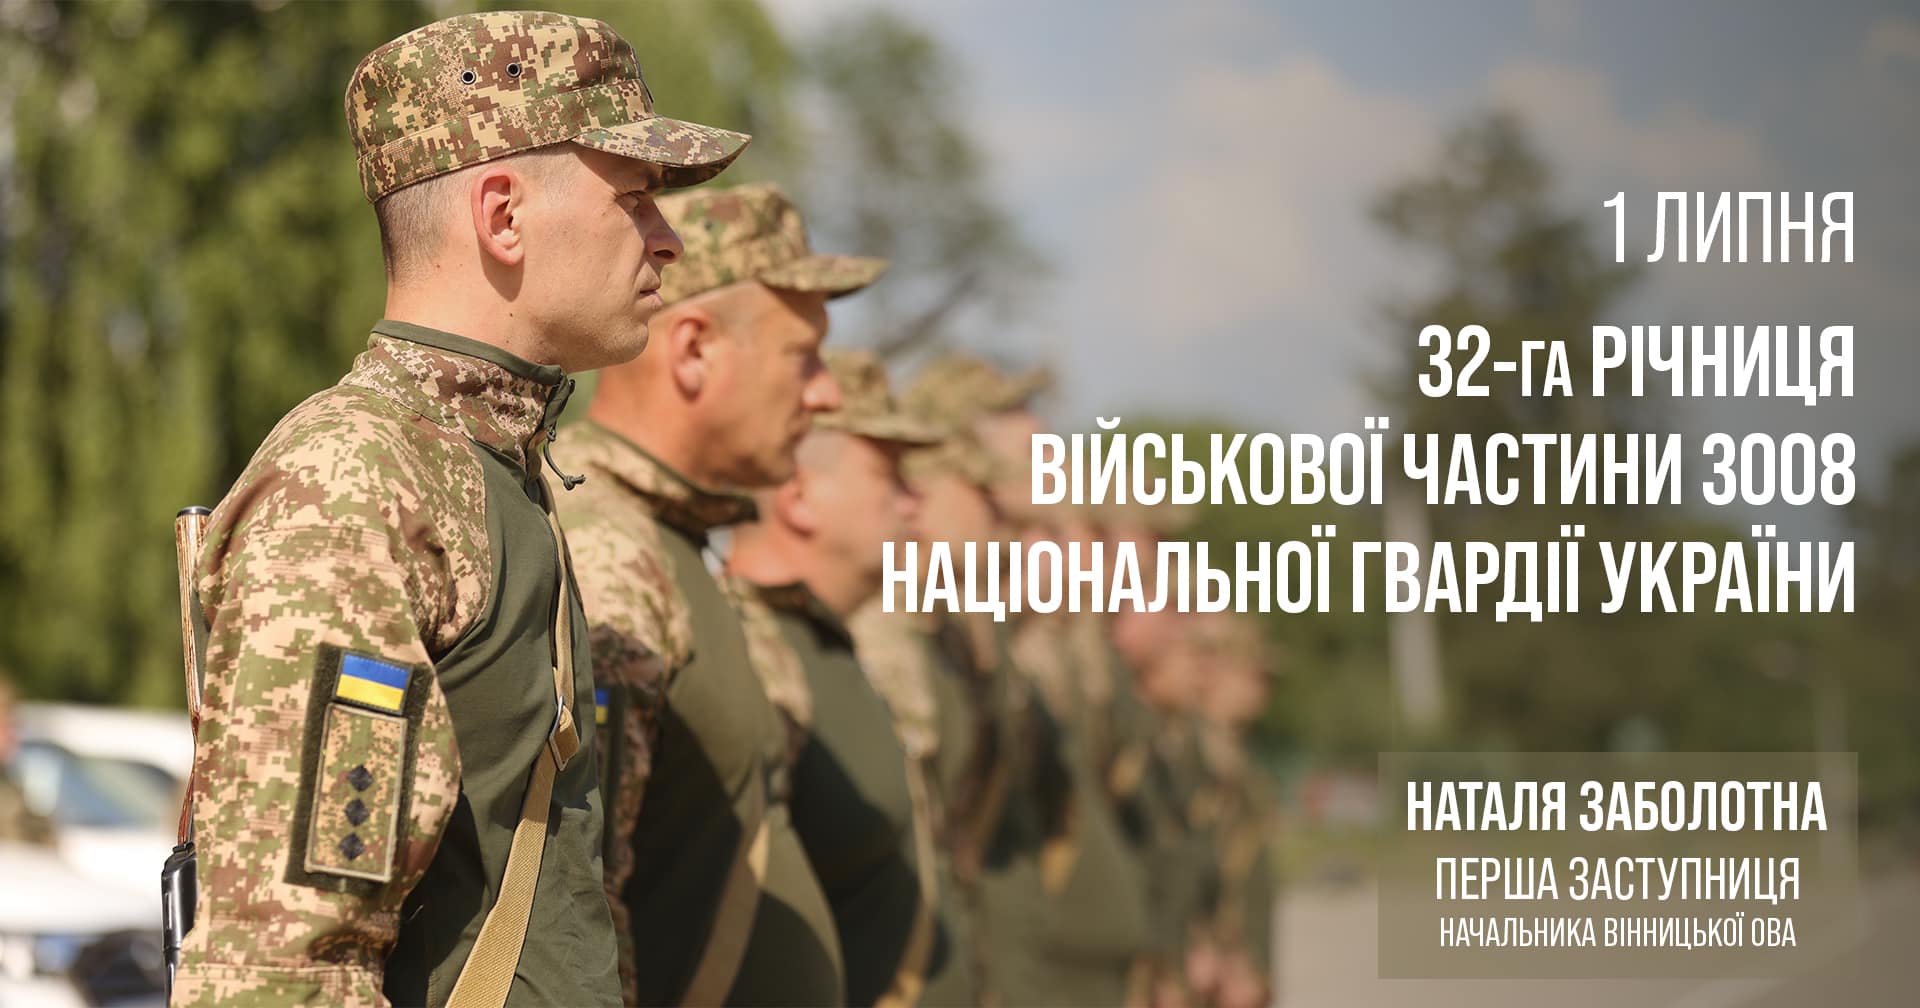 військові і напис "1 липня 32-га річниця військової частини 3008 Національної гвардії України"